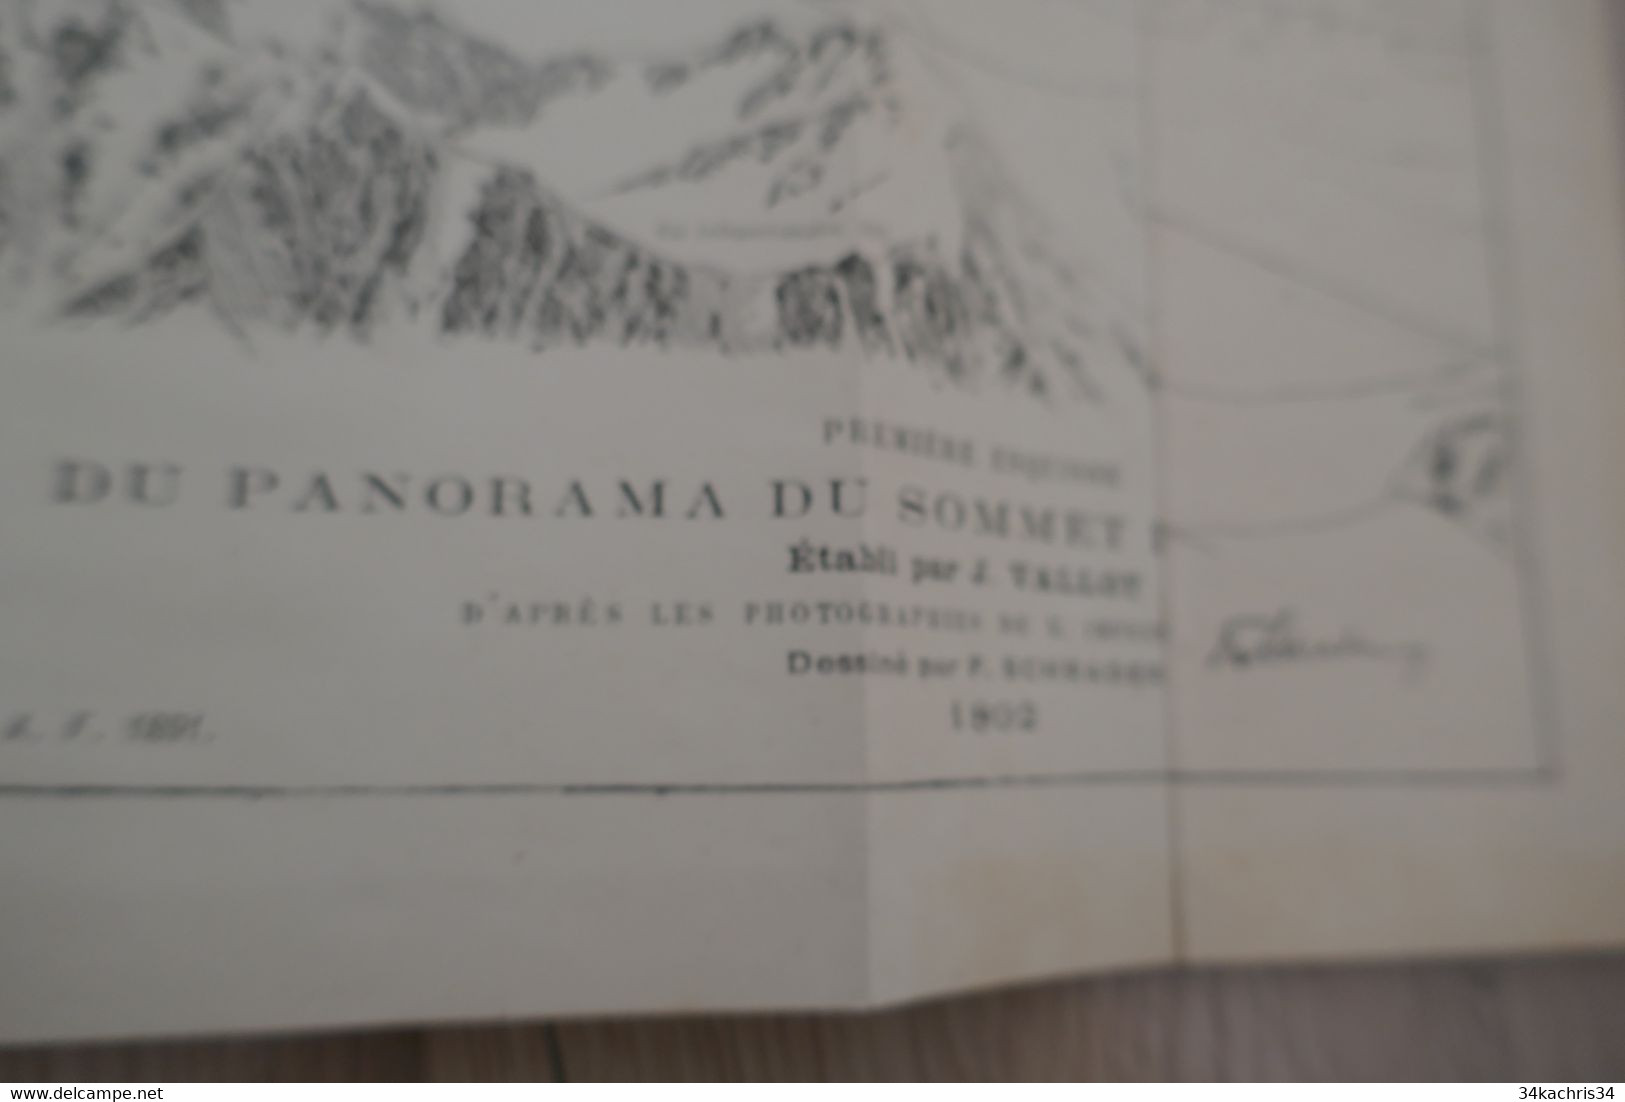 J.Vallot Première esquisse du panorama du Mont Blanc 1894 dessins de Schrader rarissime dépliant